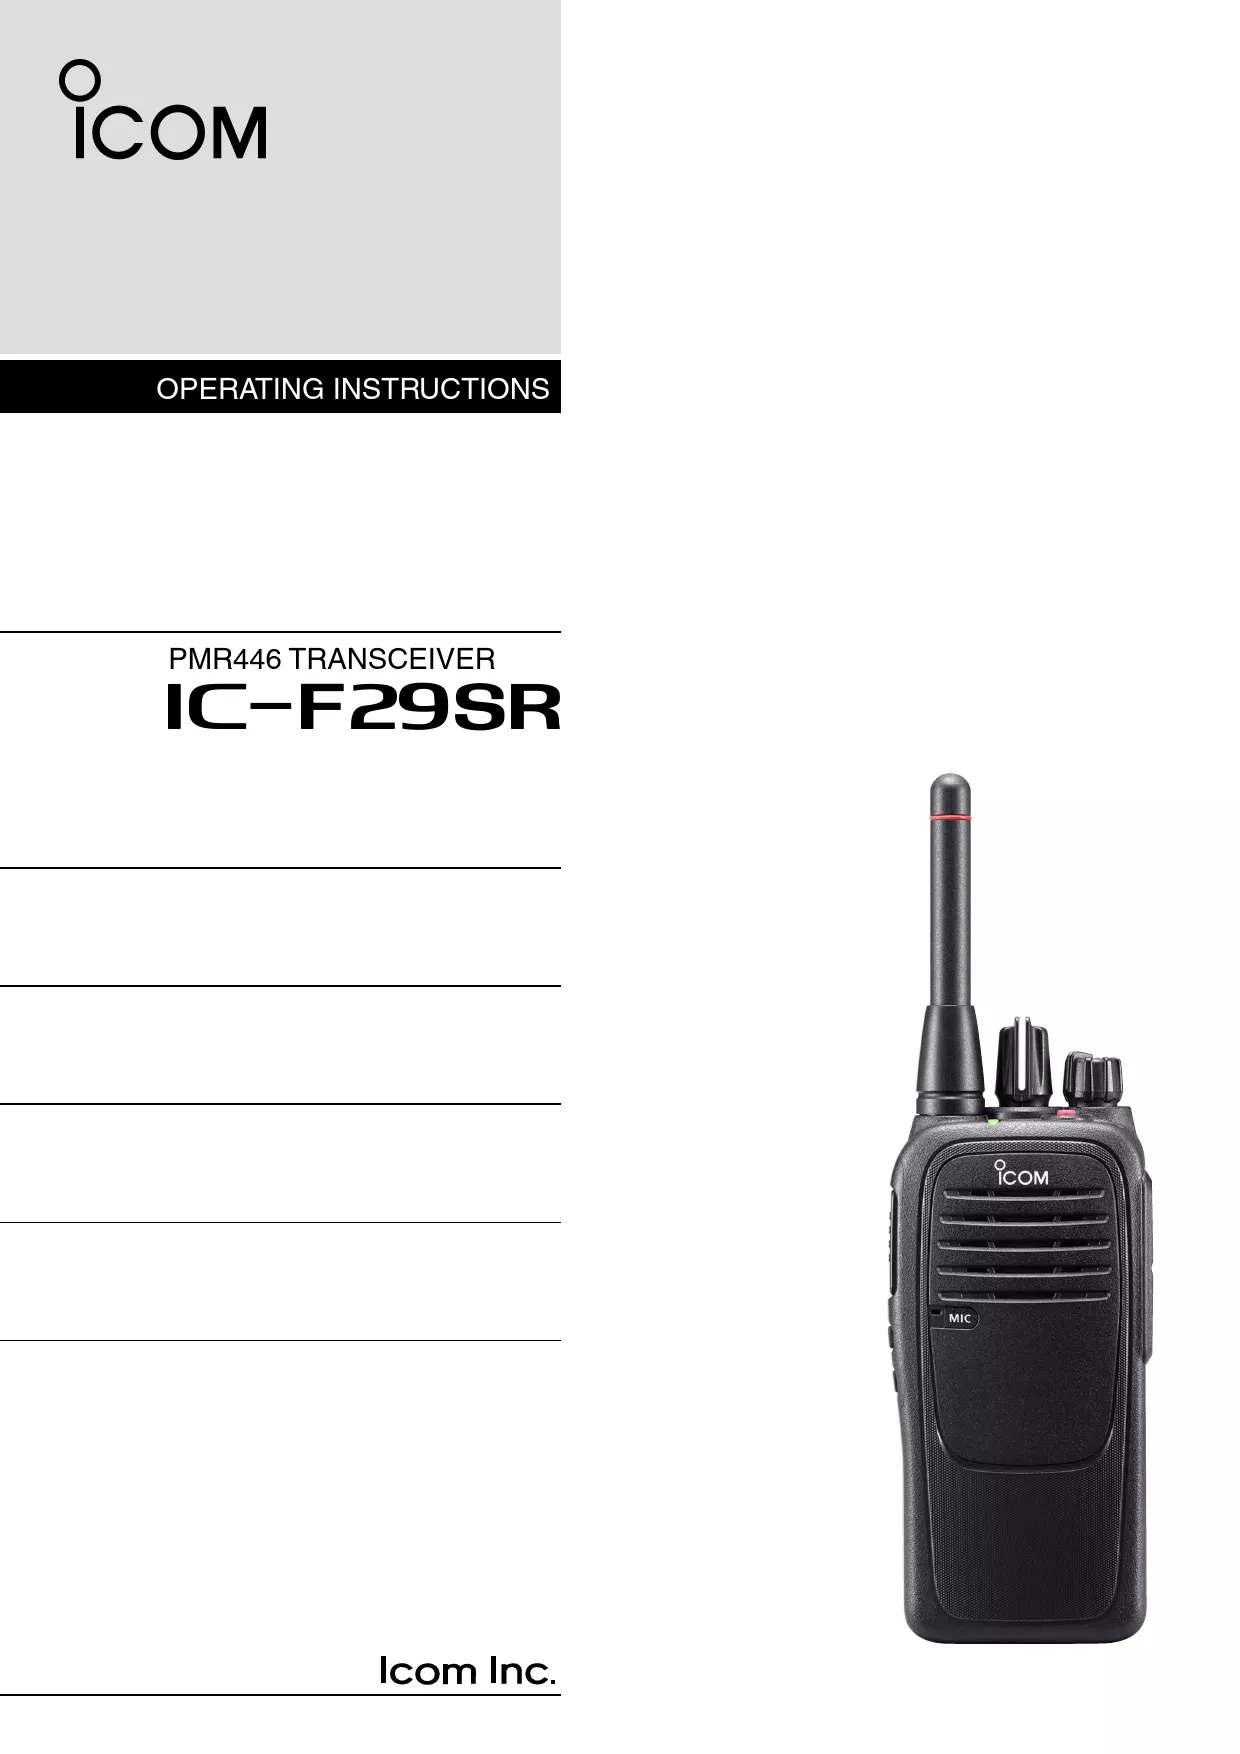 Mode d'emploi ICOM IC-F29SR